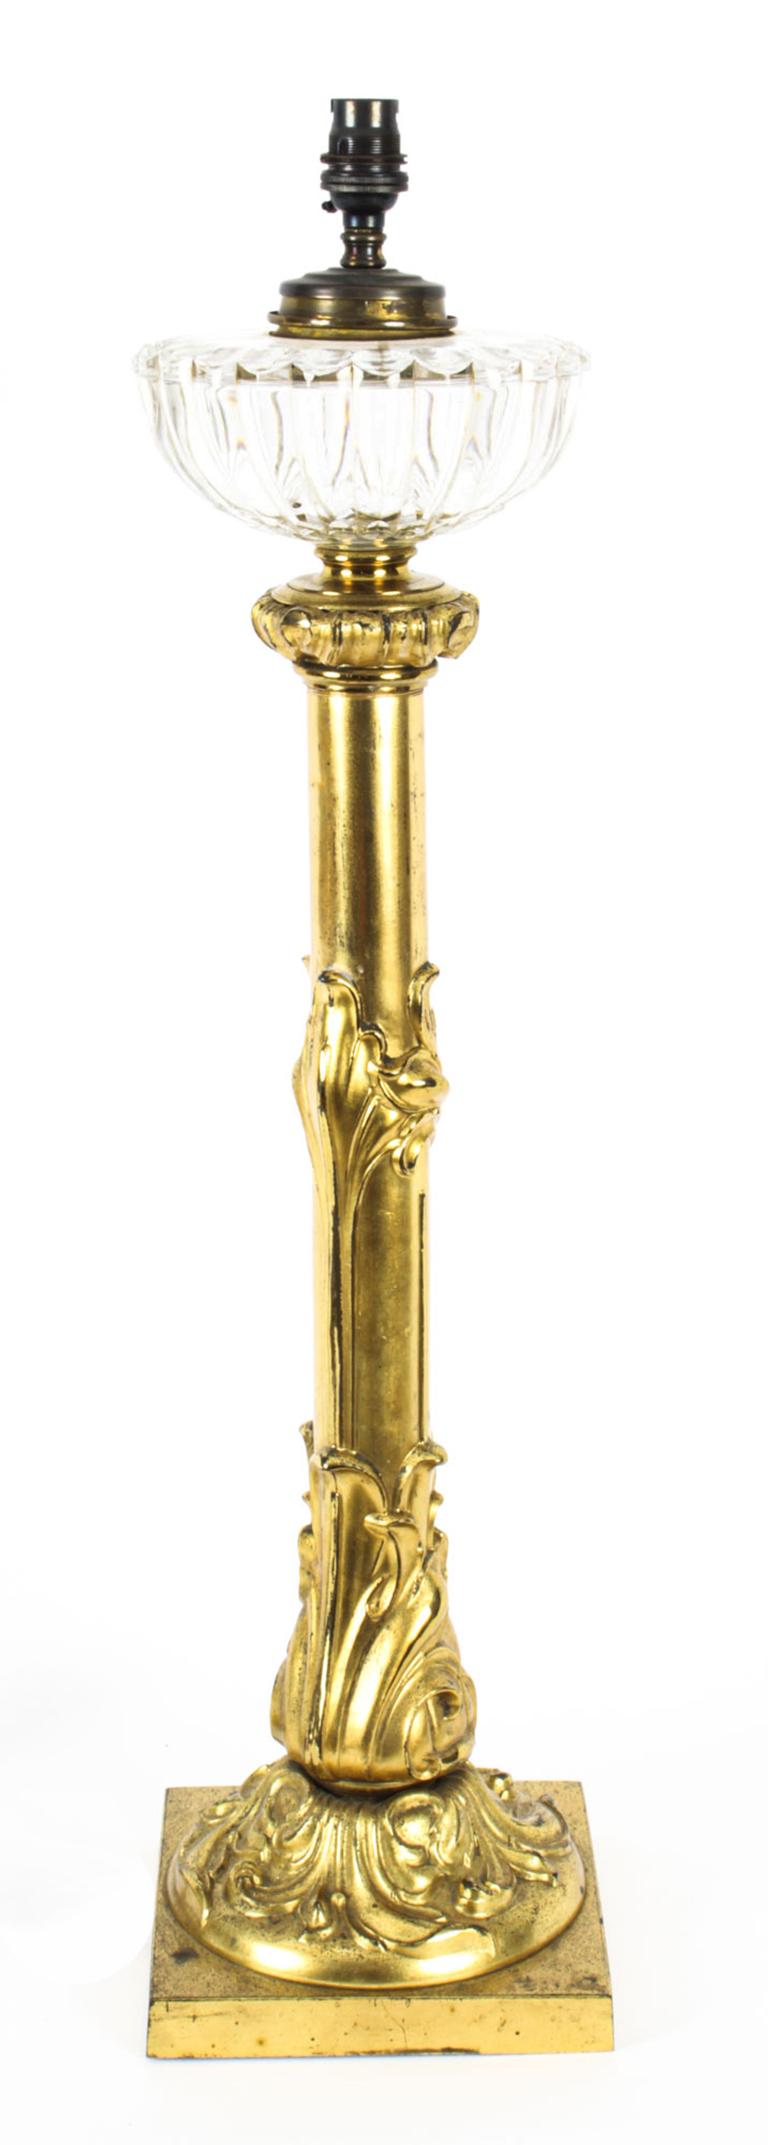 Eine große, 72cm, schöne englische William IV Tischlampe, um 1835 datiert.

Die auffällige Lampe verfügt über den originalen Glasbehälter, das klassische William-IV-Design und wurde aus einer Palmer-Öllampe aus den 1830er Jahren